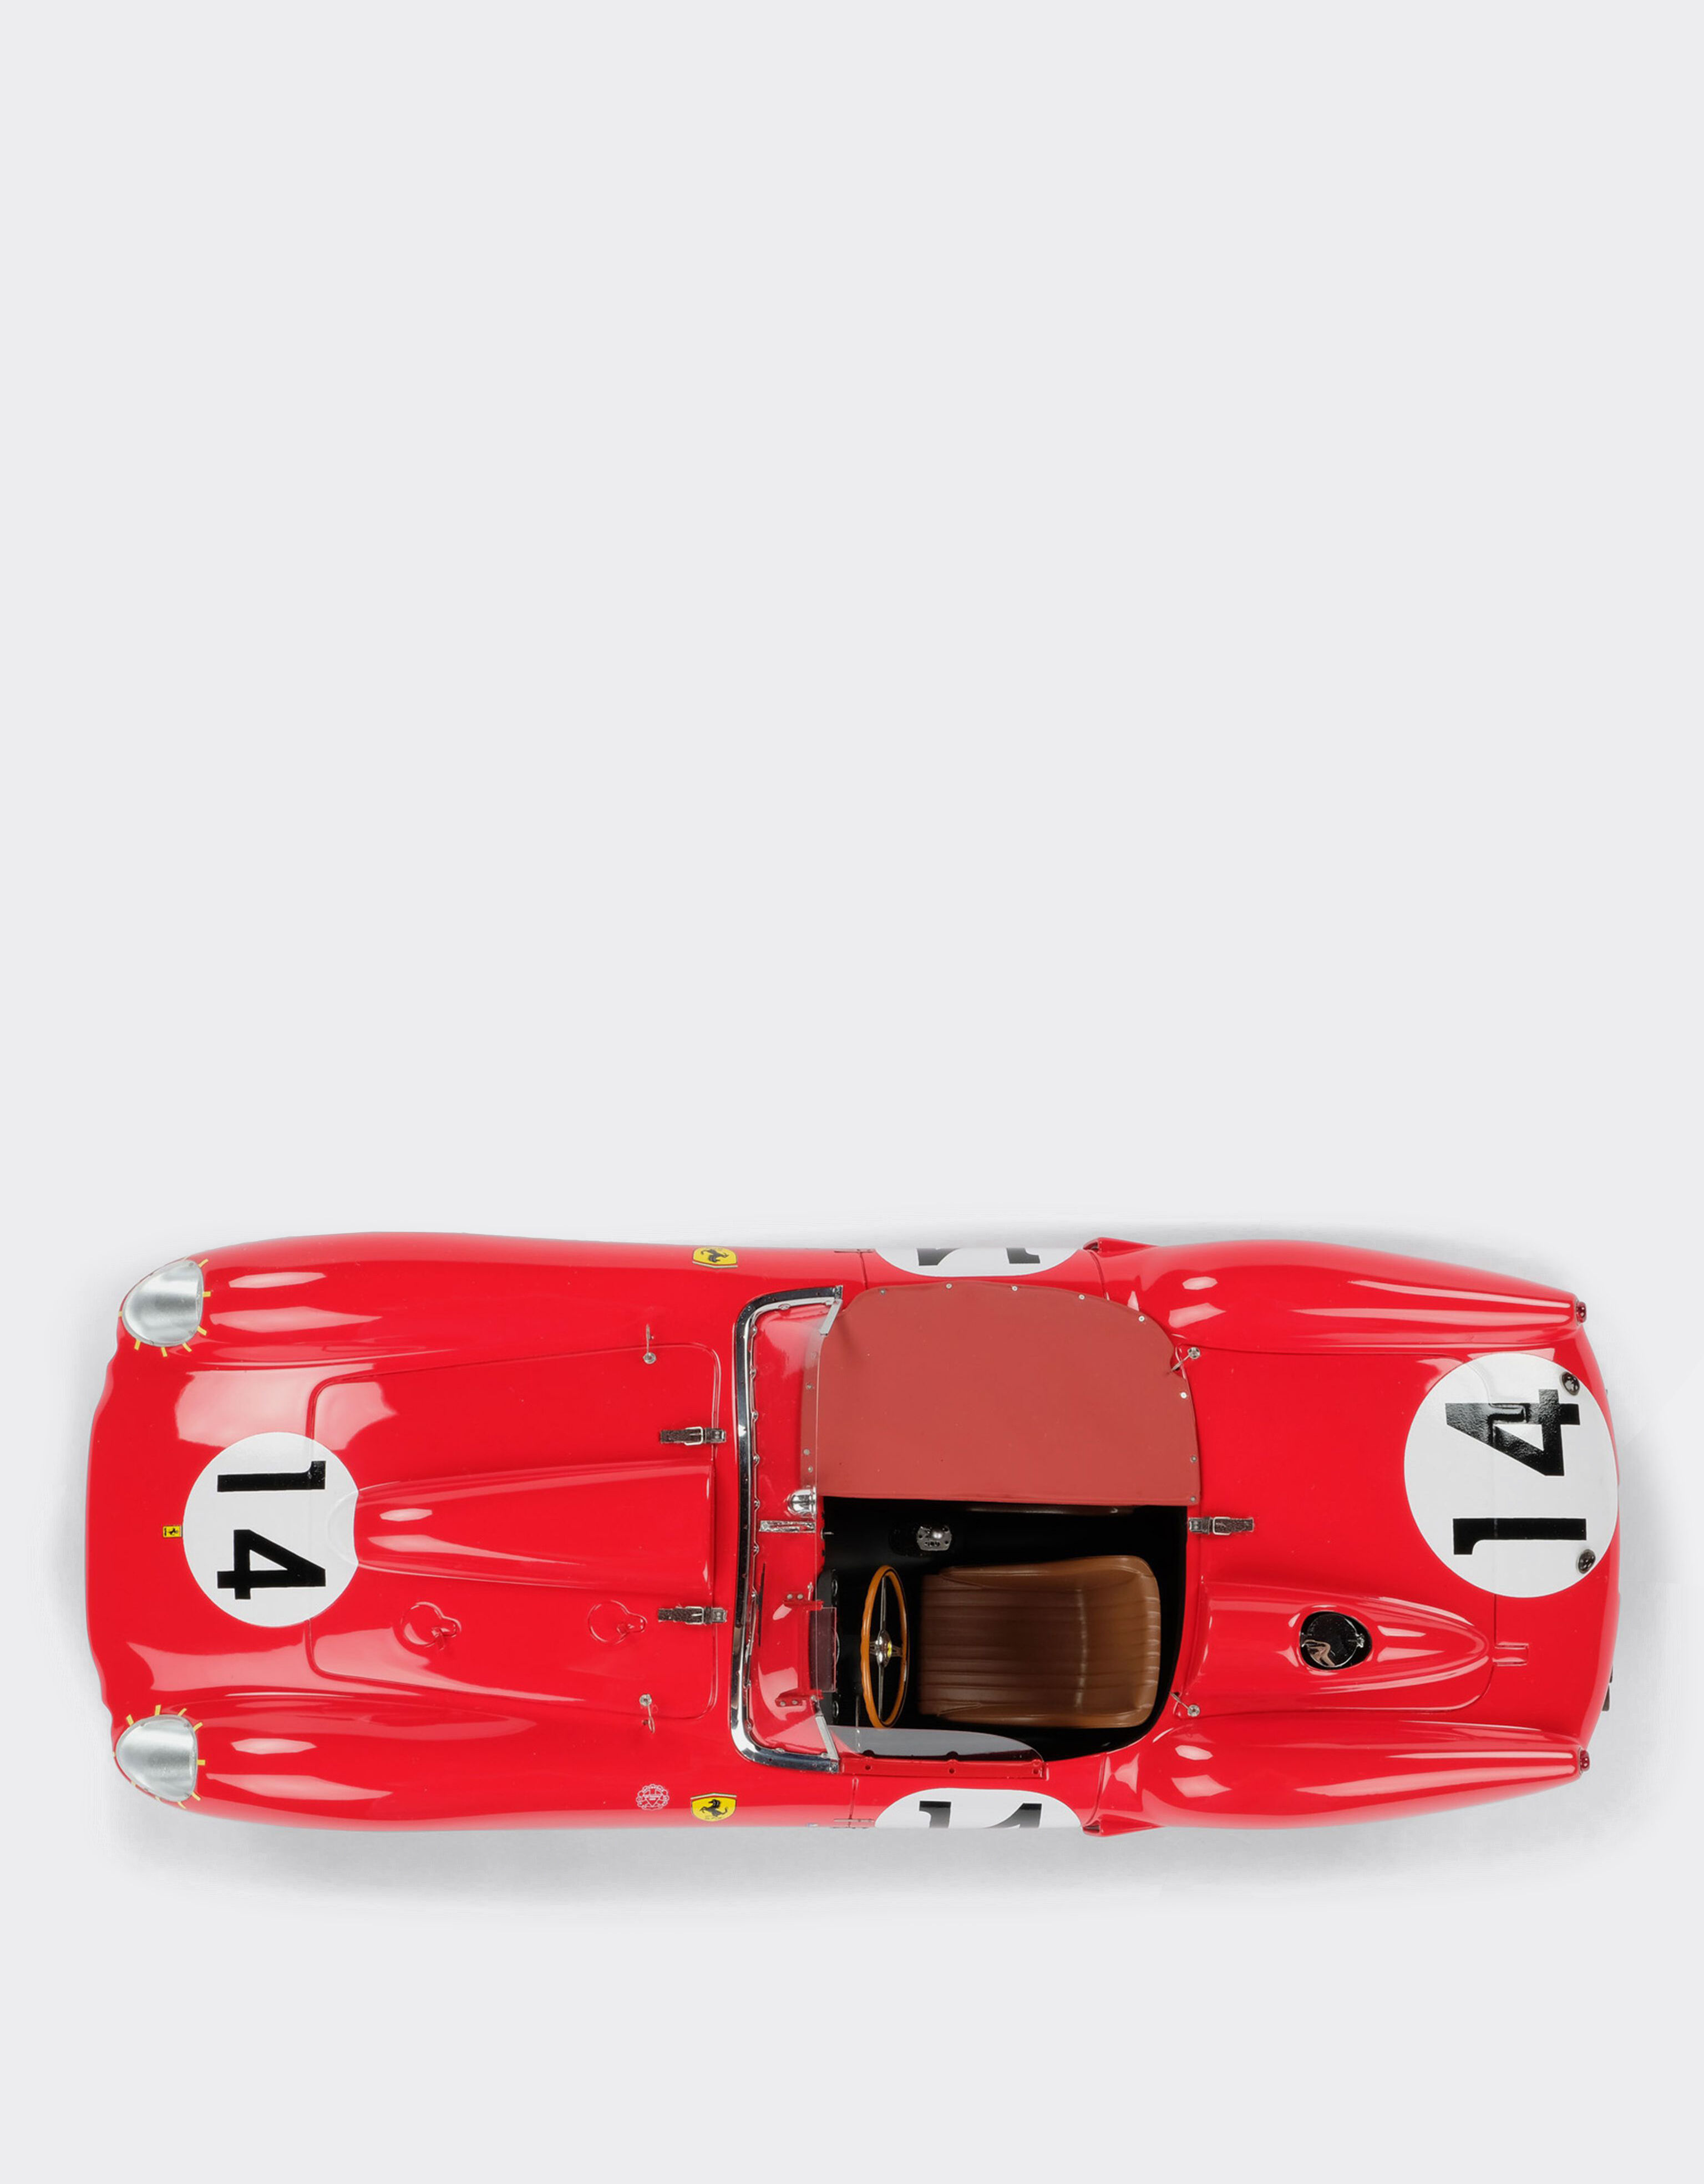 Ferrari 250 TR 1958 Le Mans model in 1:18 scale in Red | Ferrari®